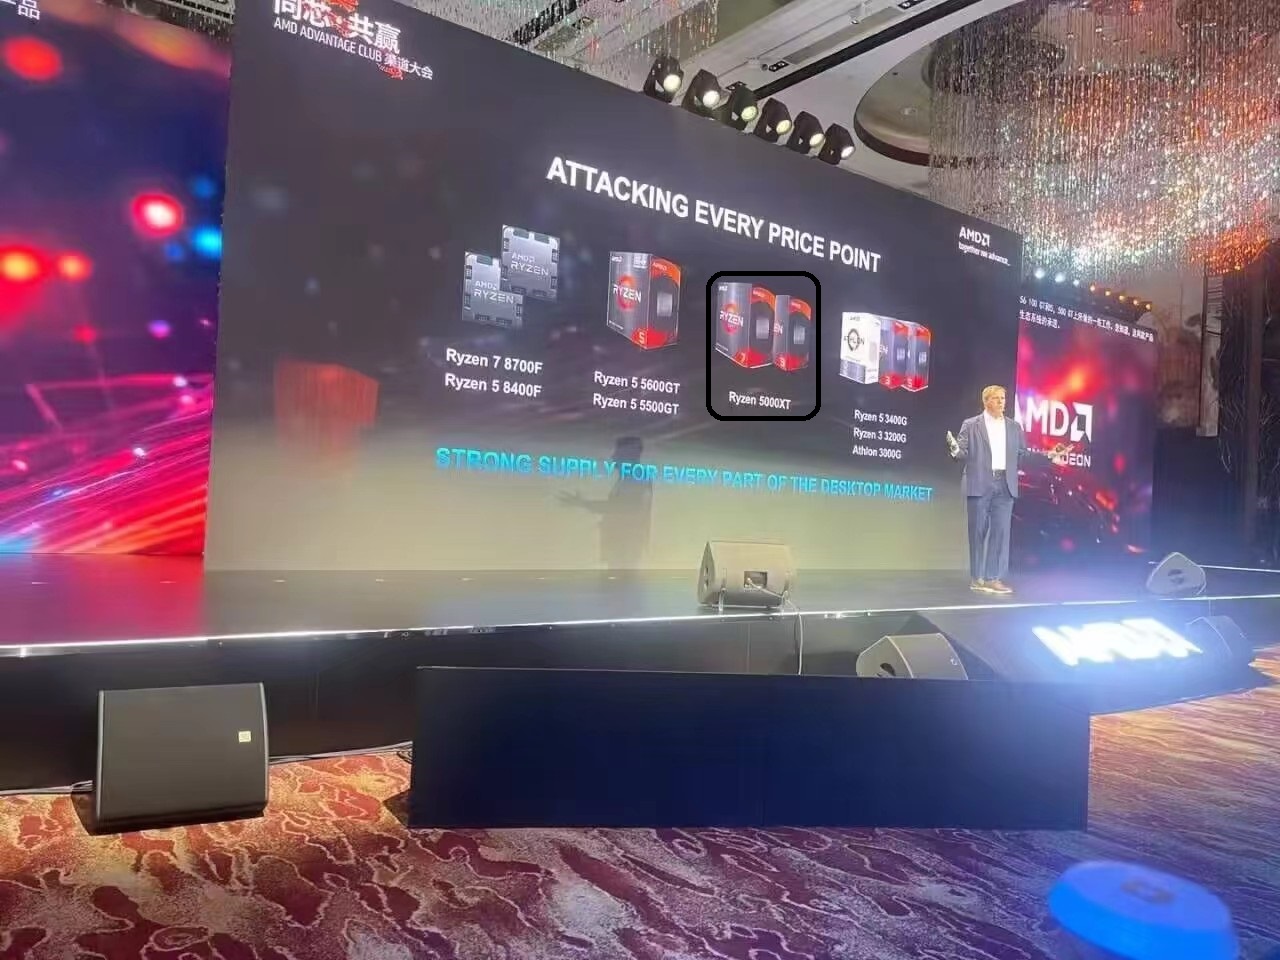 消息称 AMD 将推锐龙 5000XT 系列处理器，继续为 AM4 平台更新产品-硬件新闻-